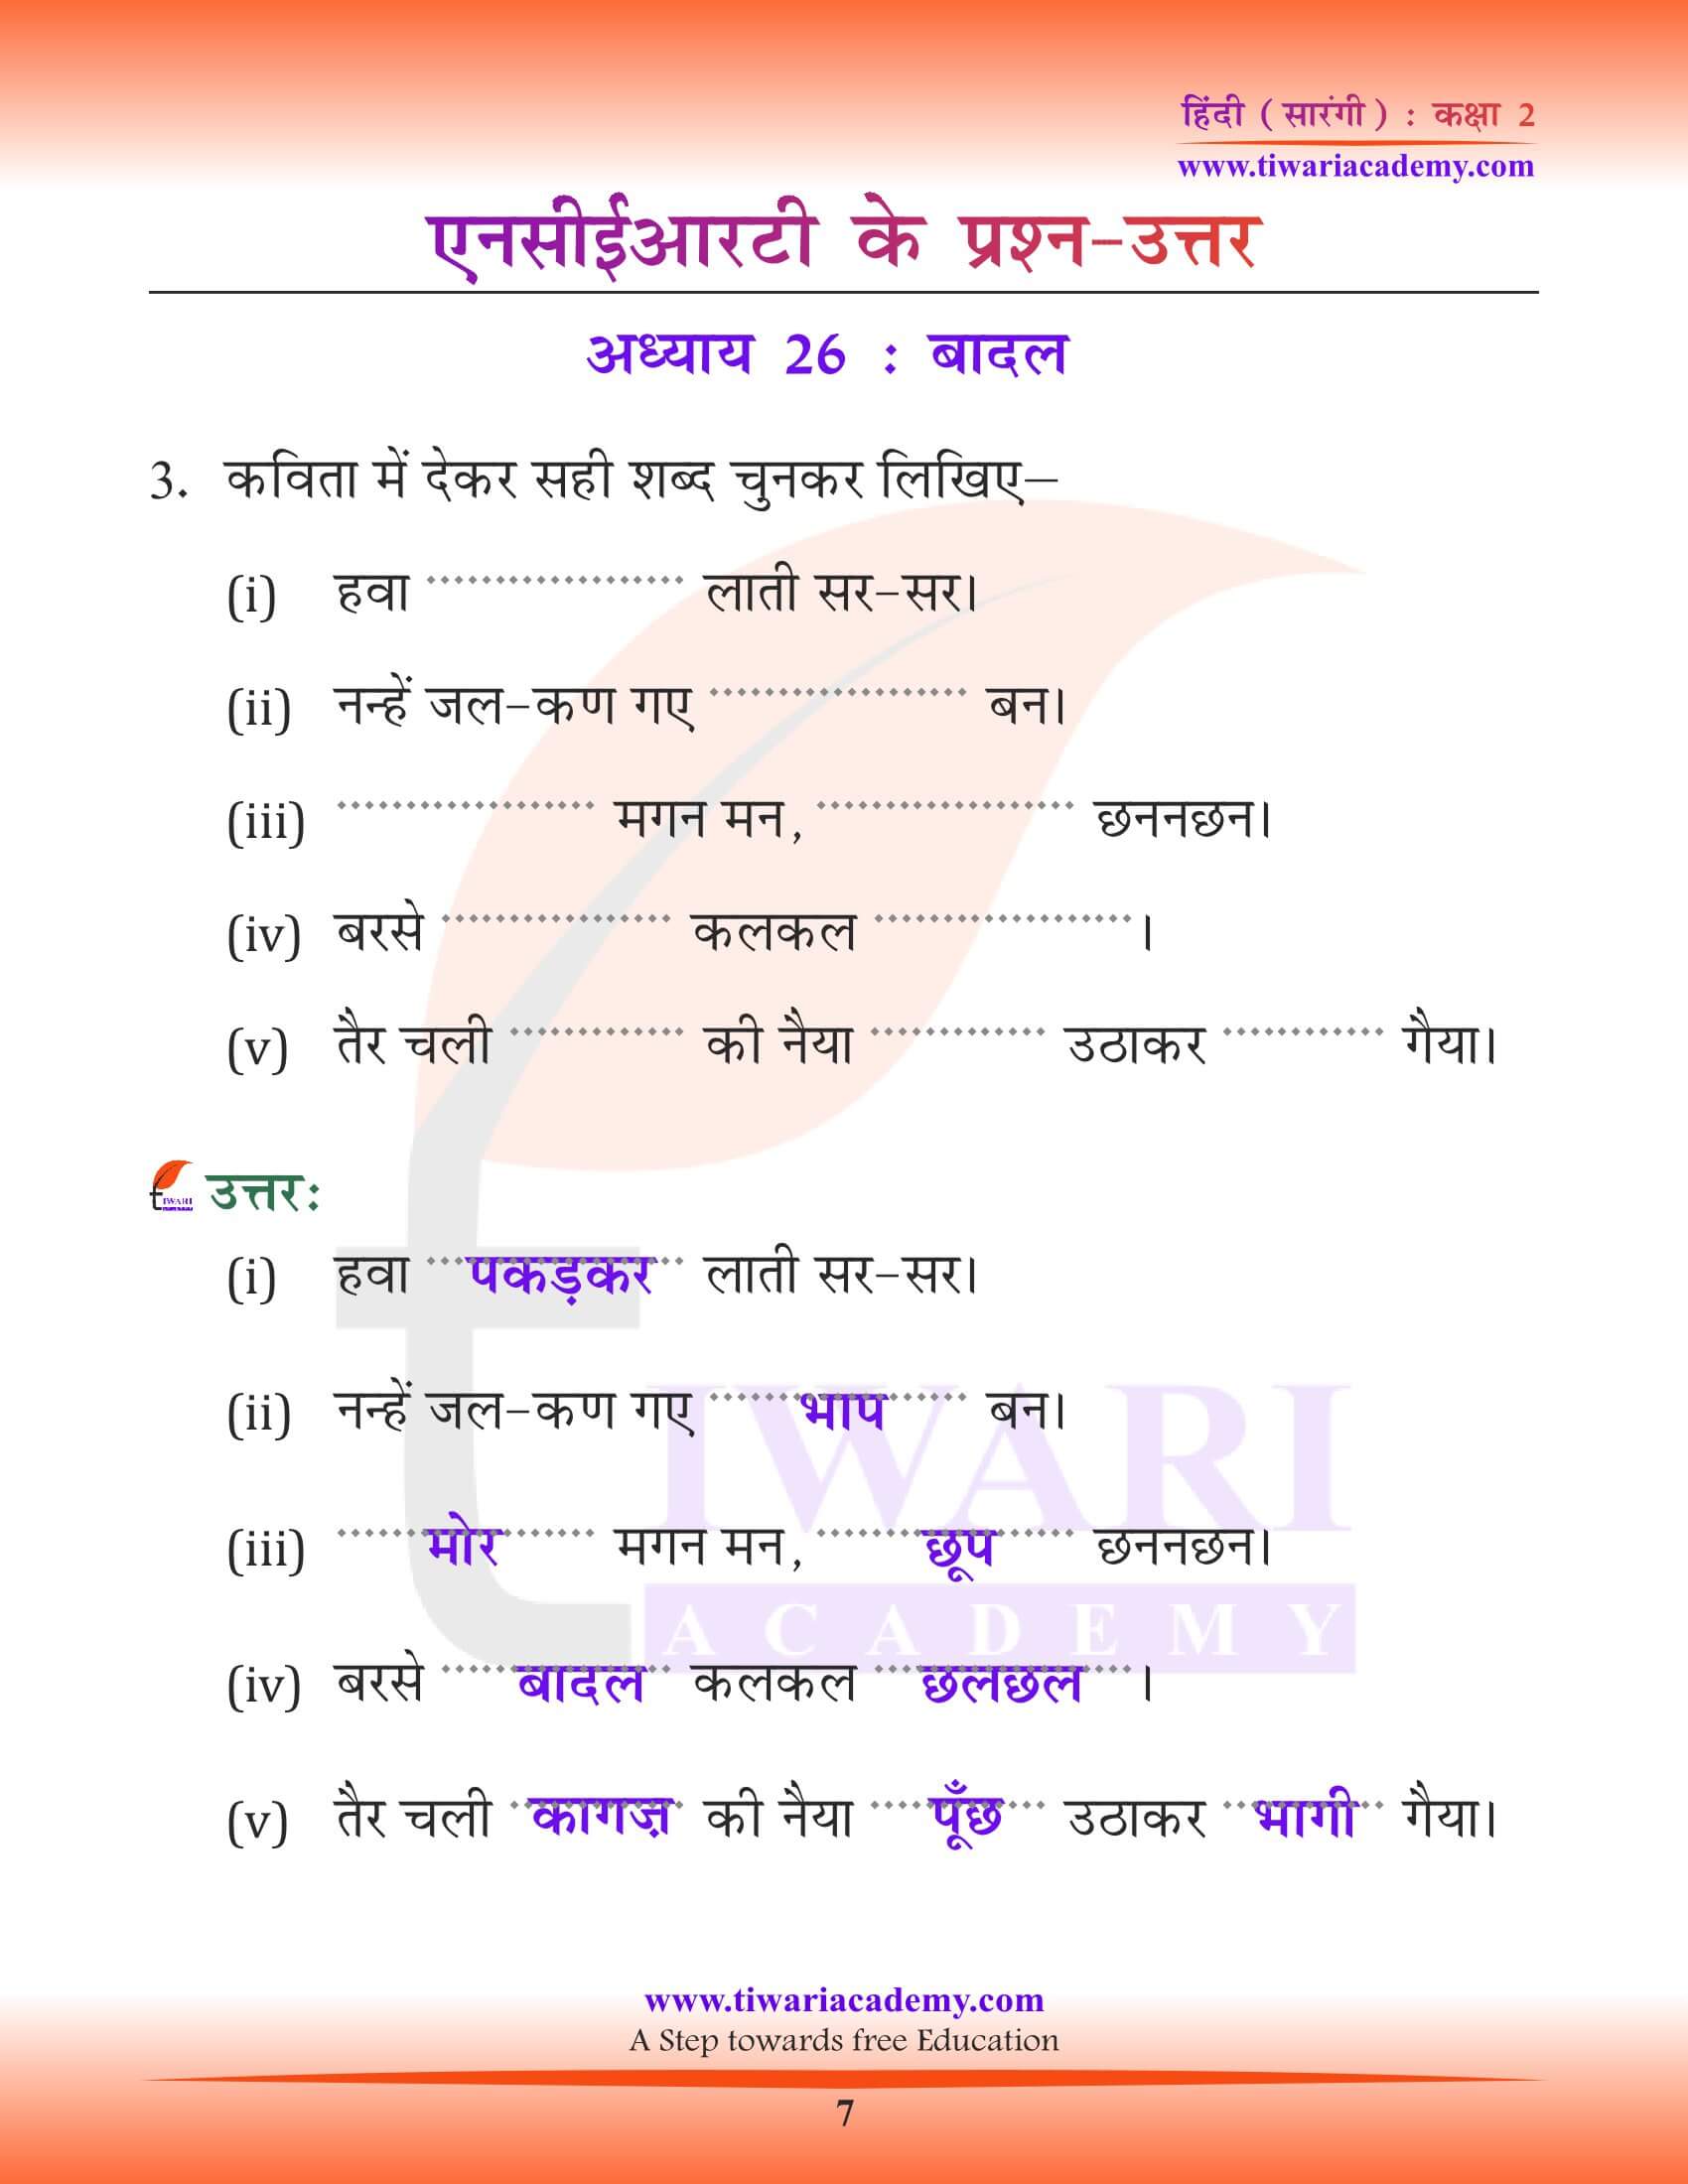 कक्षा 2 हिंदी सारंगी अध्याय 26 के हल